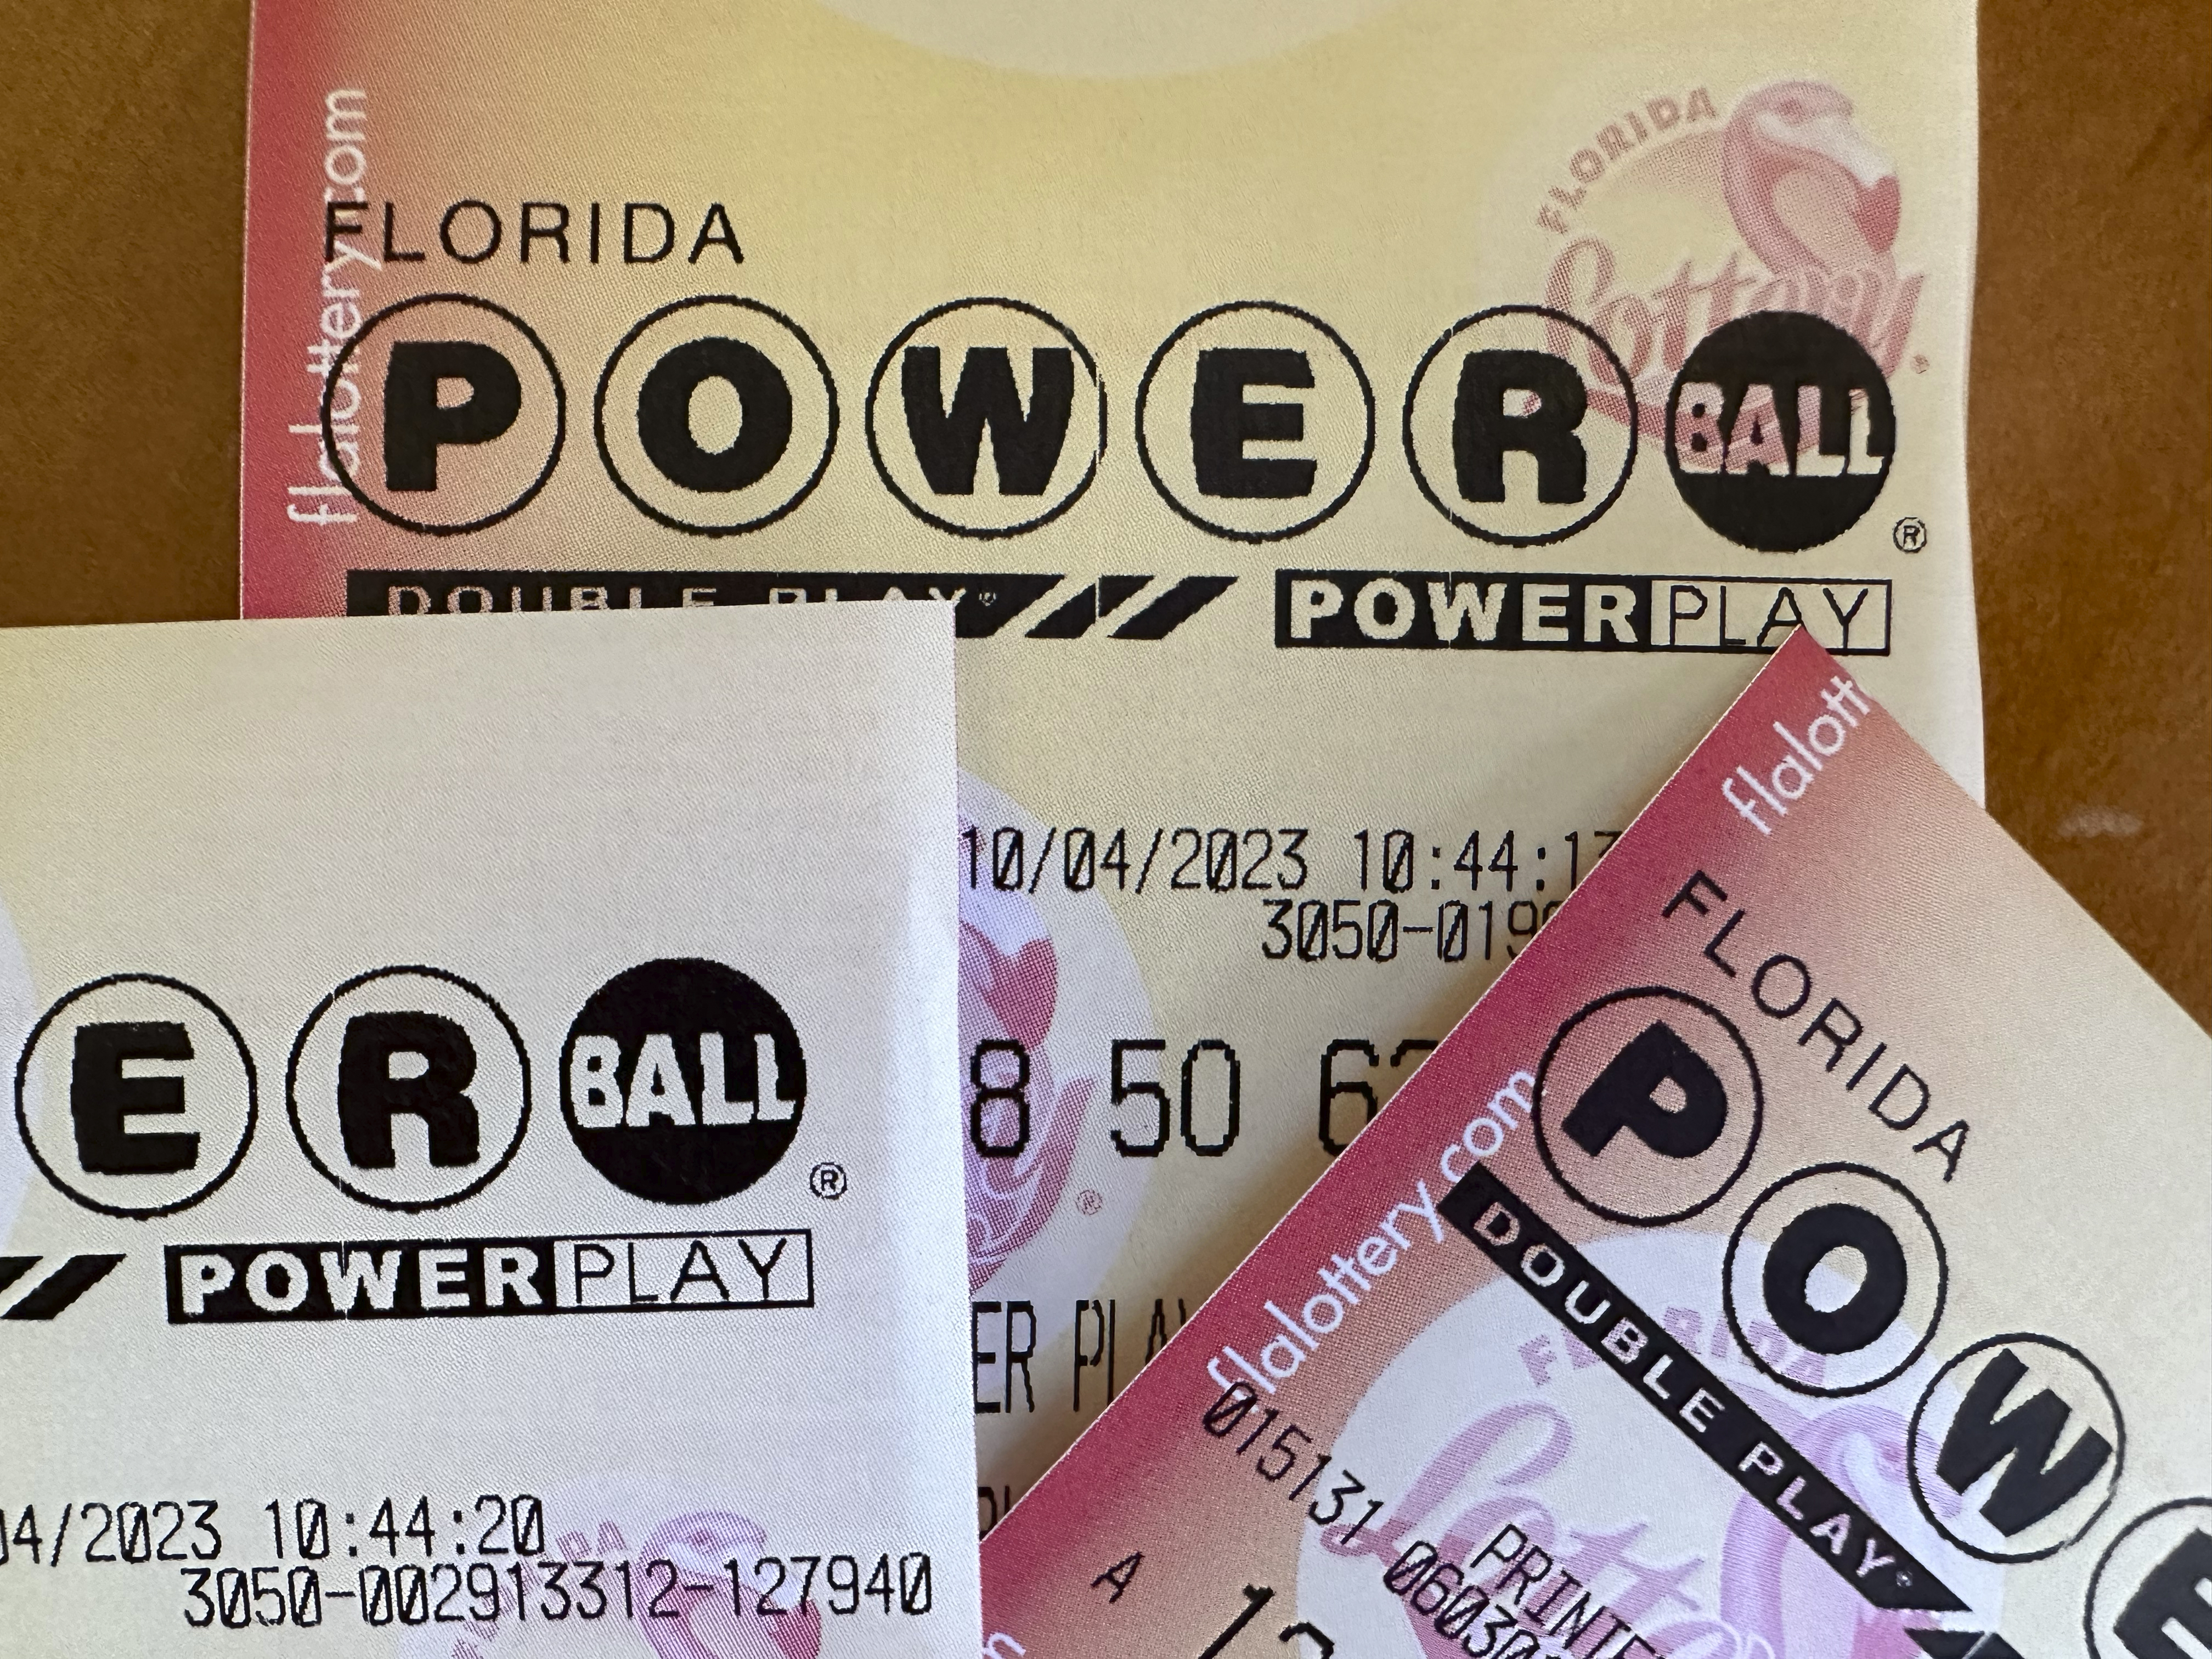 Powerball®  New Mexico Lottery